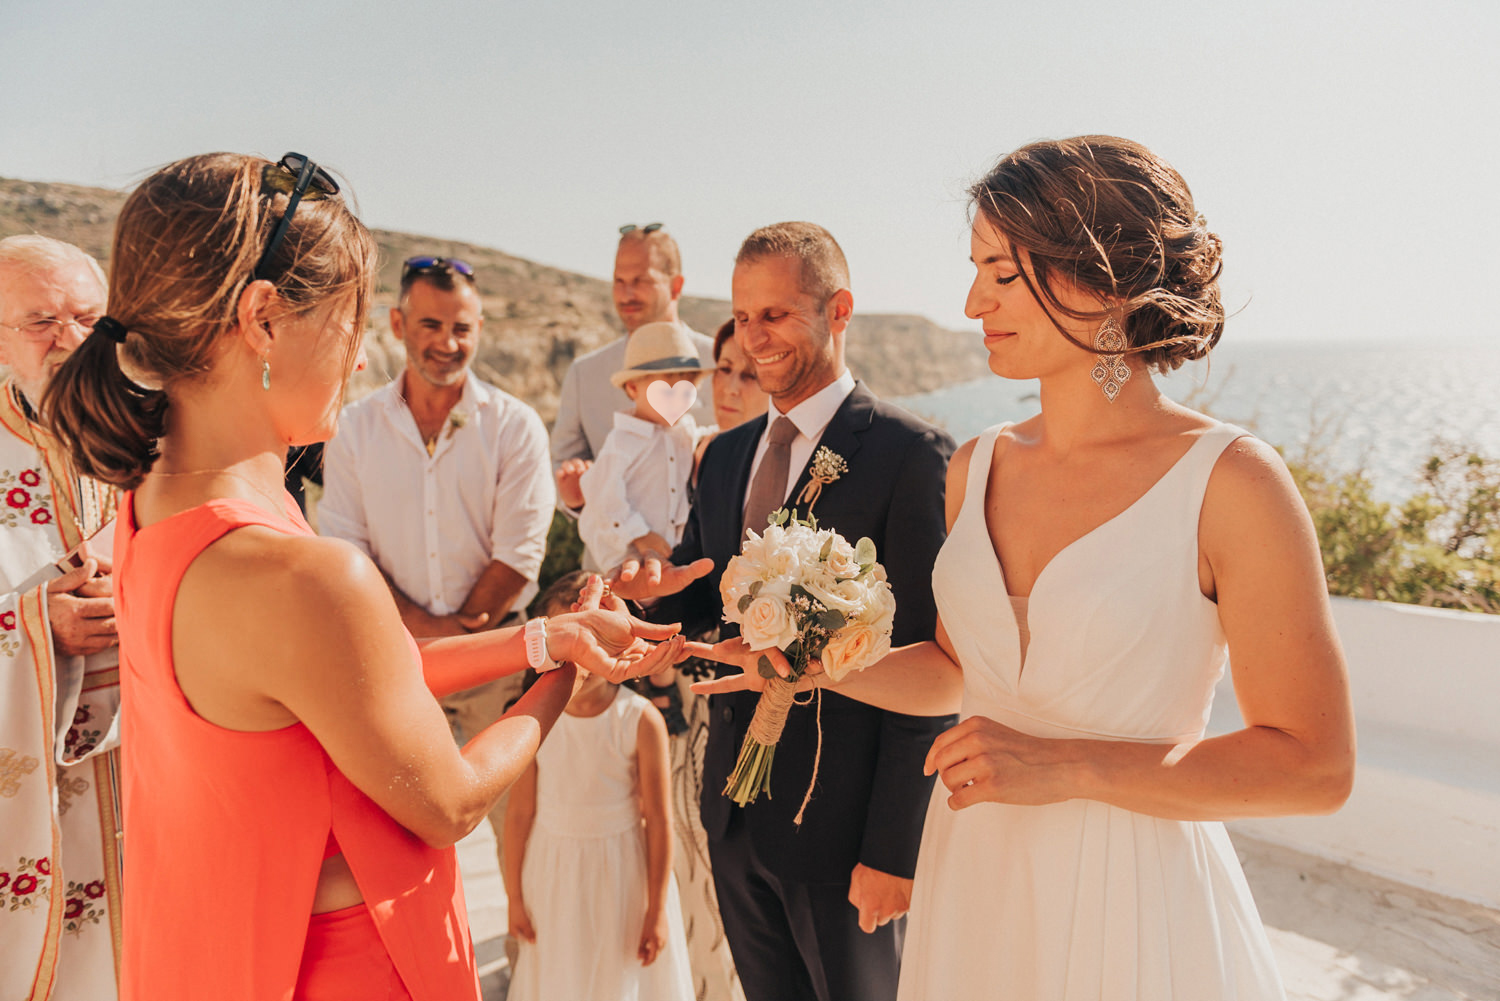 Hochzeitsfotograf-Kreta-Auslandshochzeit-Destination-wedding-crete-greece-wedding photographer-36 Kopie